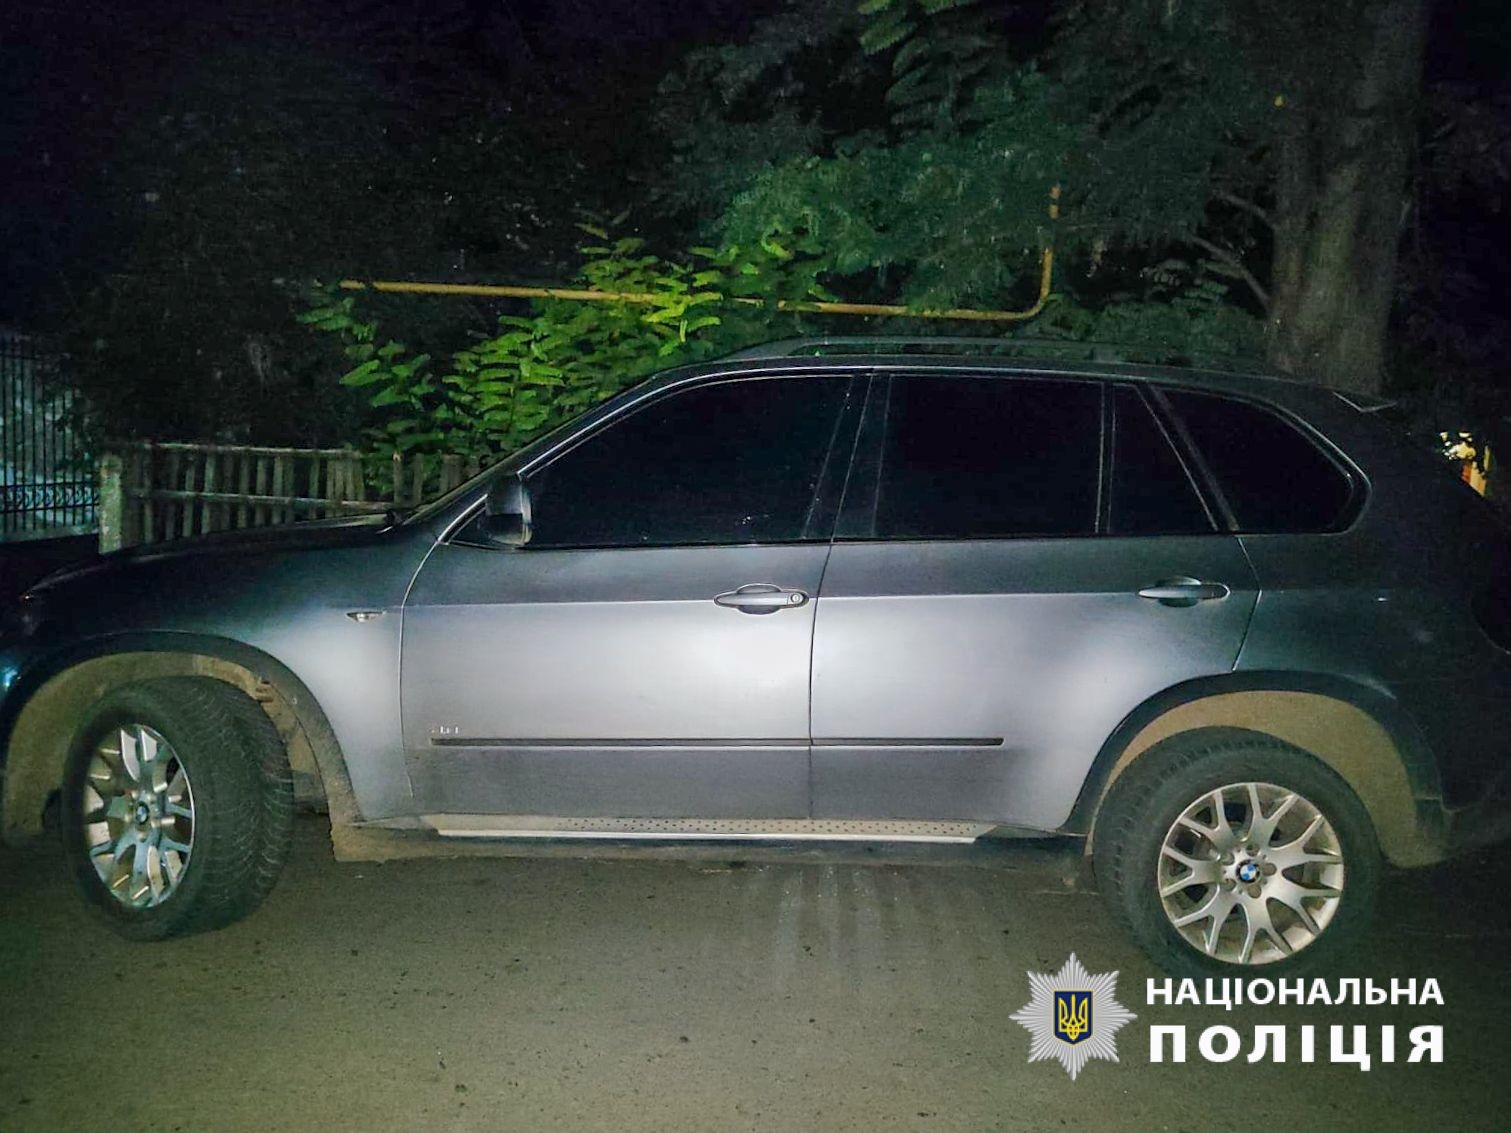 В Одесской области автомобиль сбил корову, которая от удара упала на погонку - женщину пришлось госпитализировать